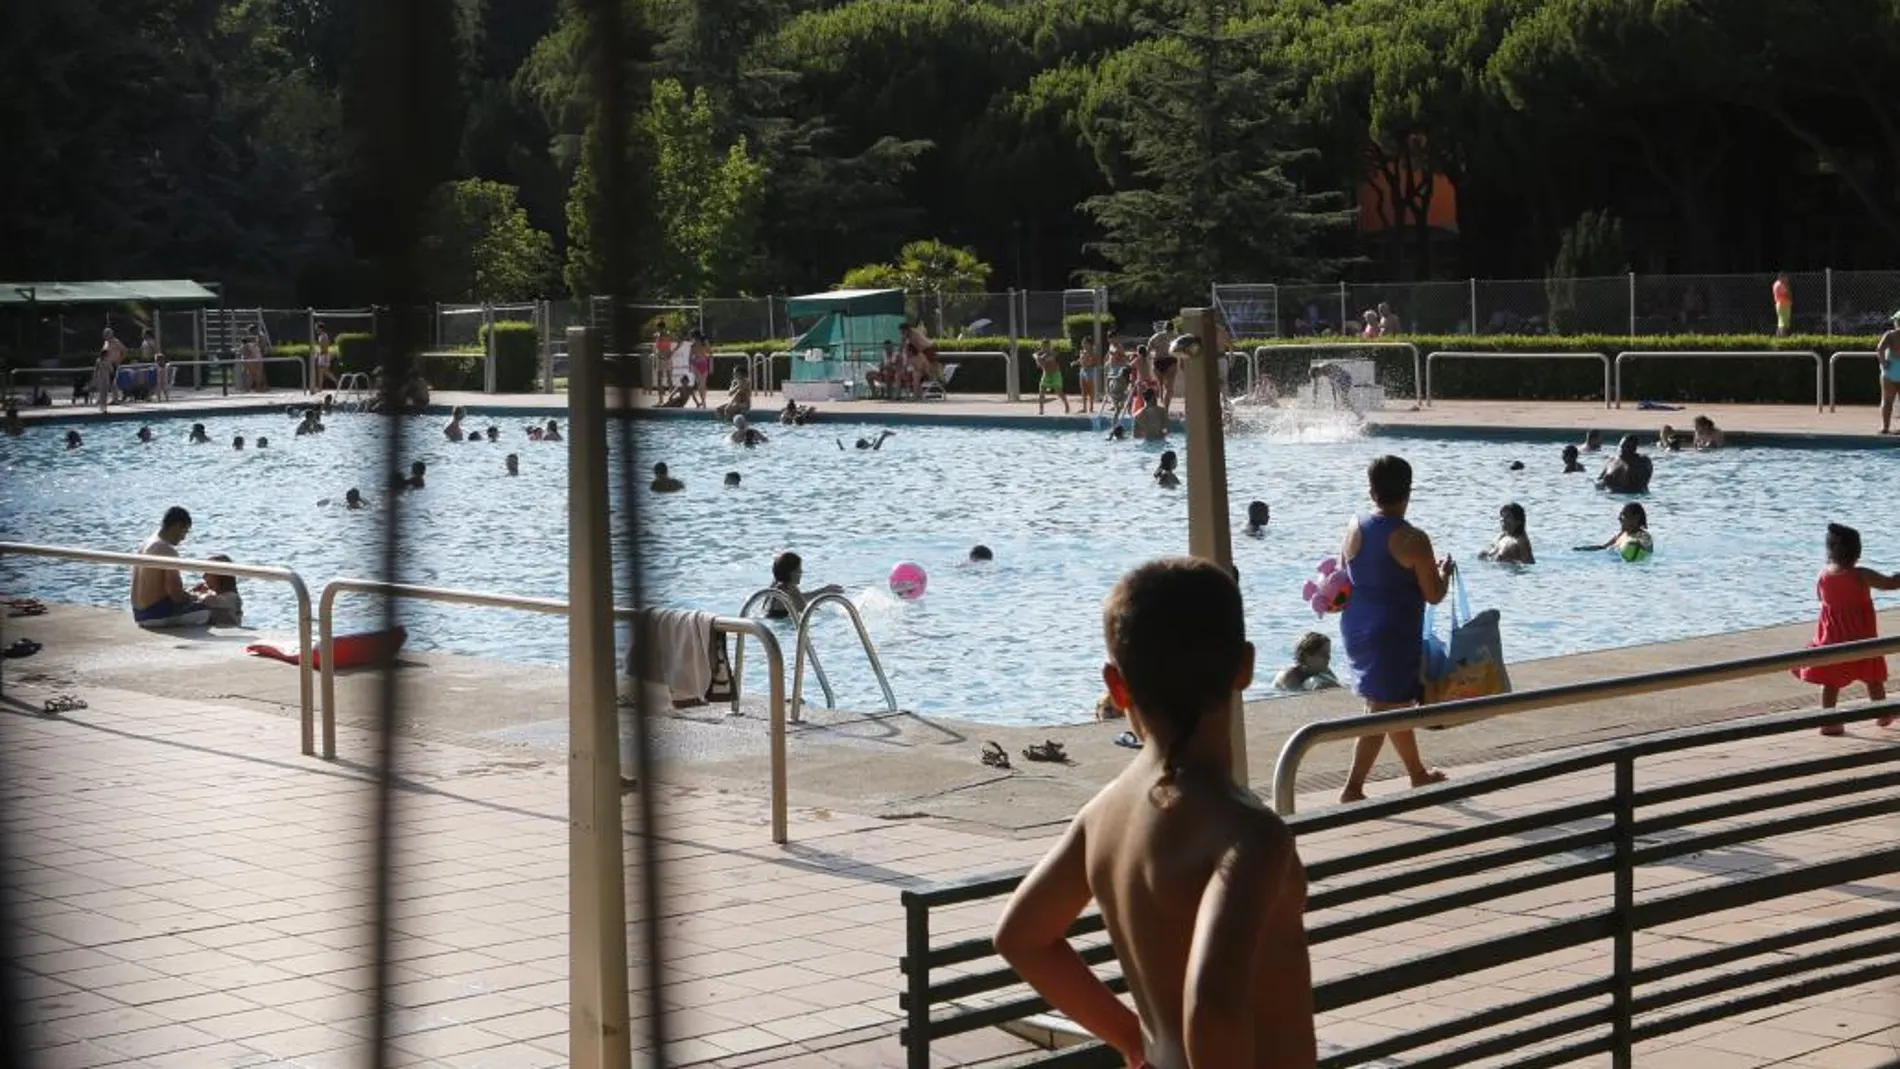 Según los propietarios, no hay personal para controlar el aforo en las piscinas